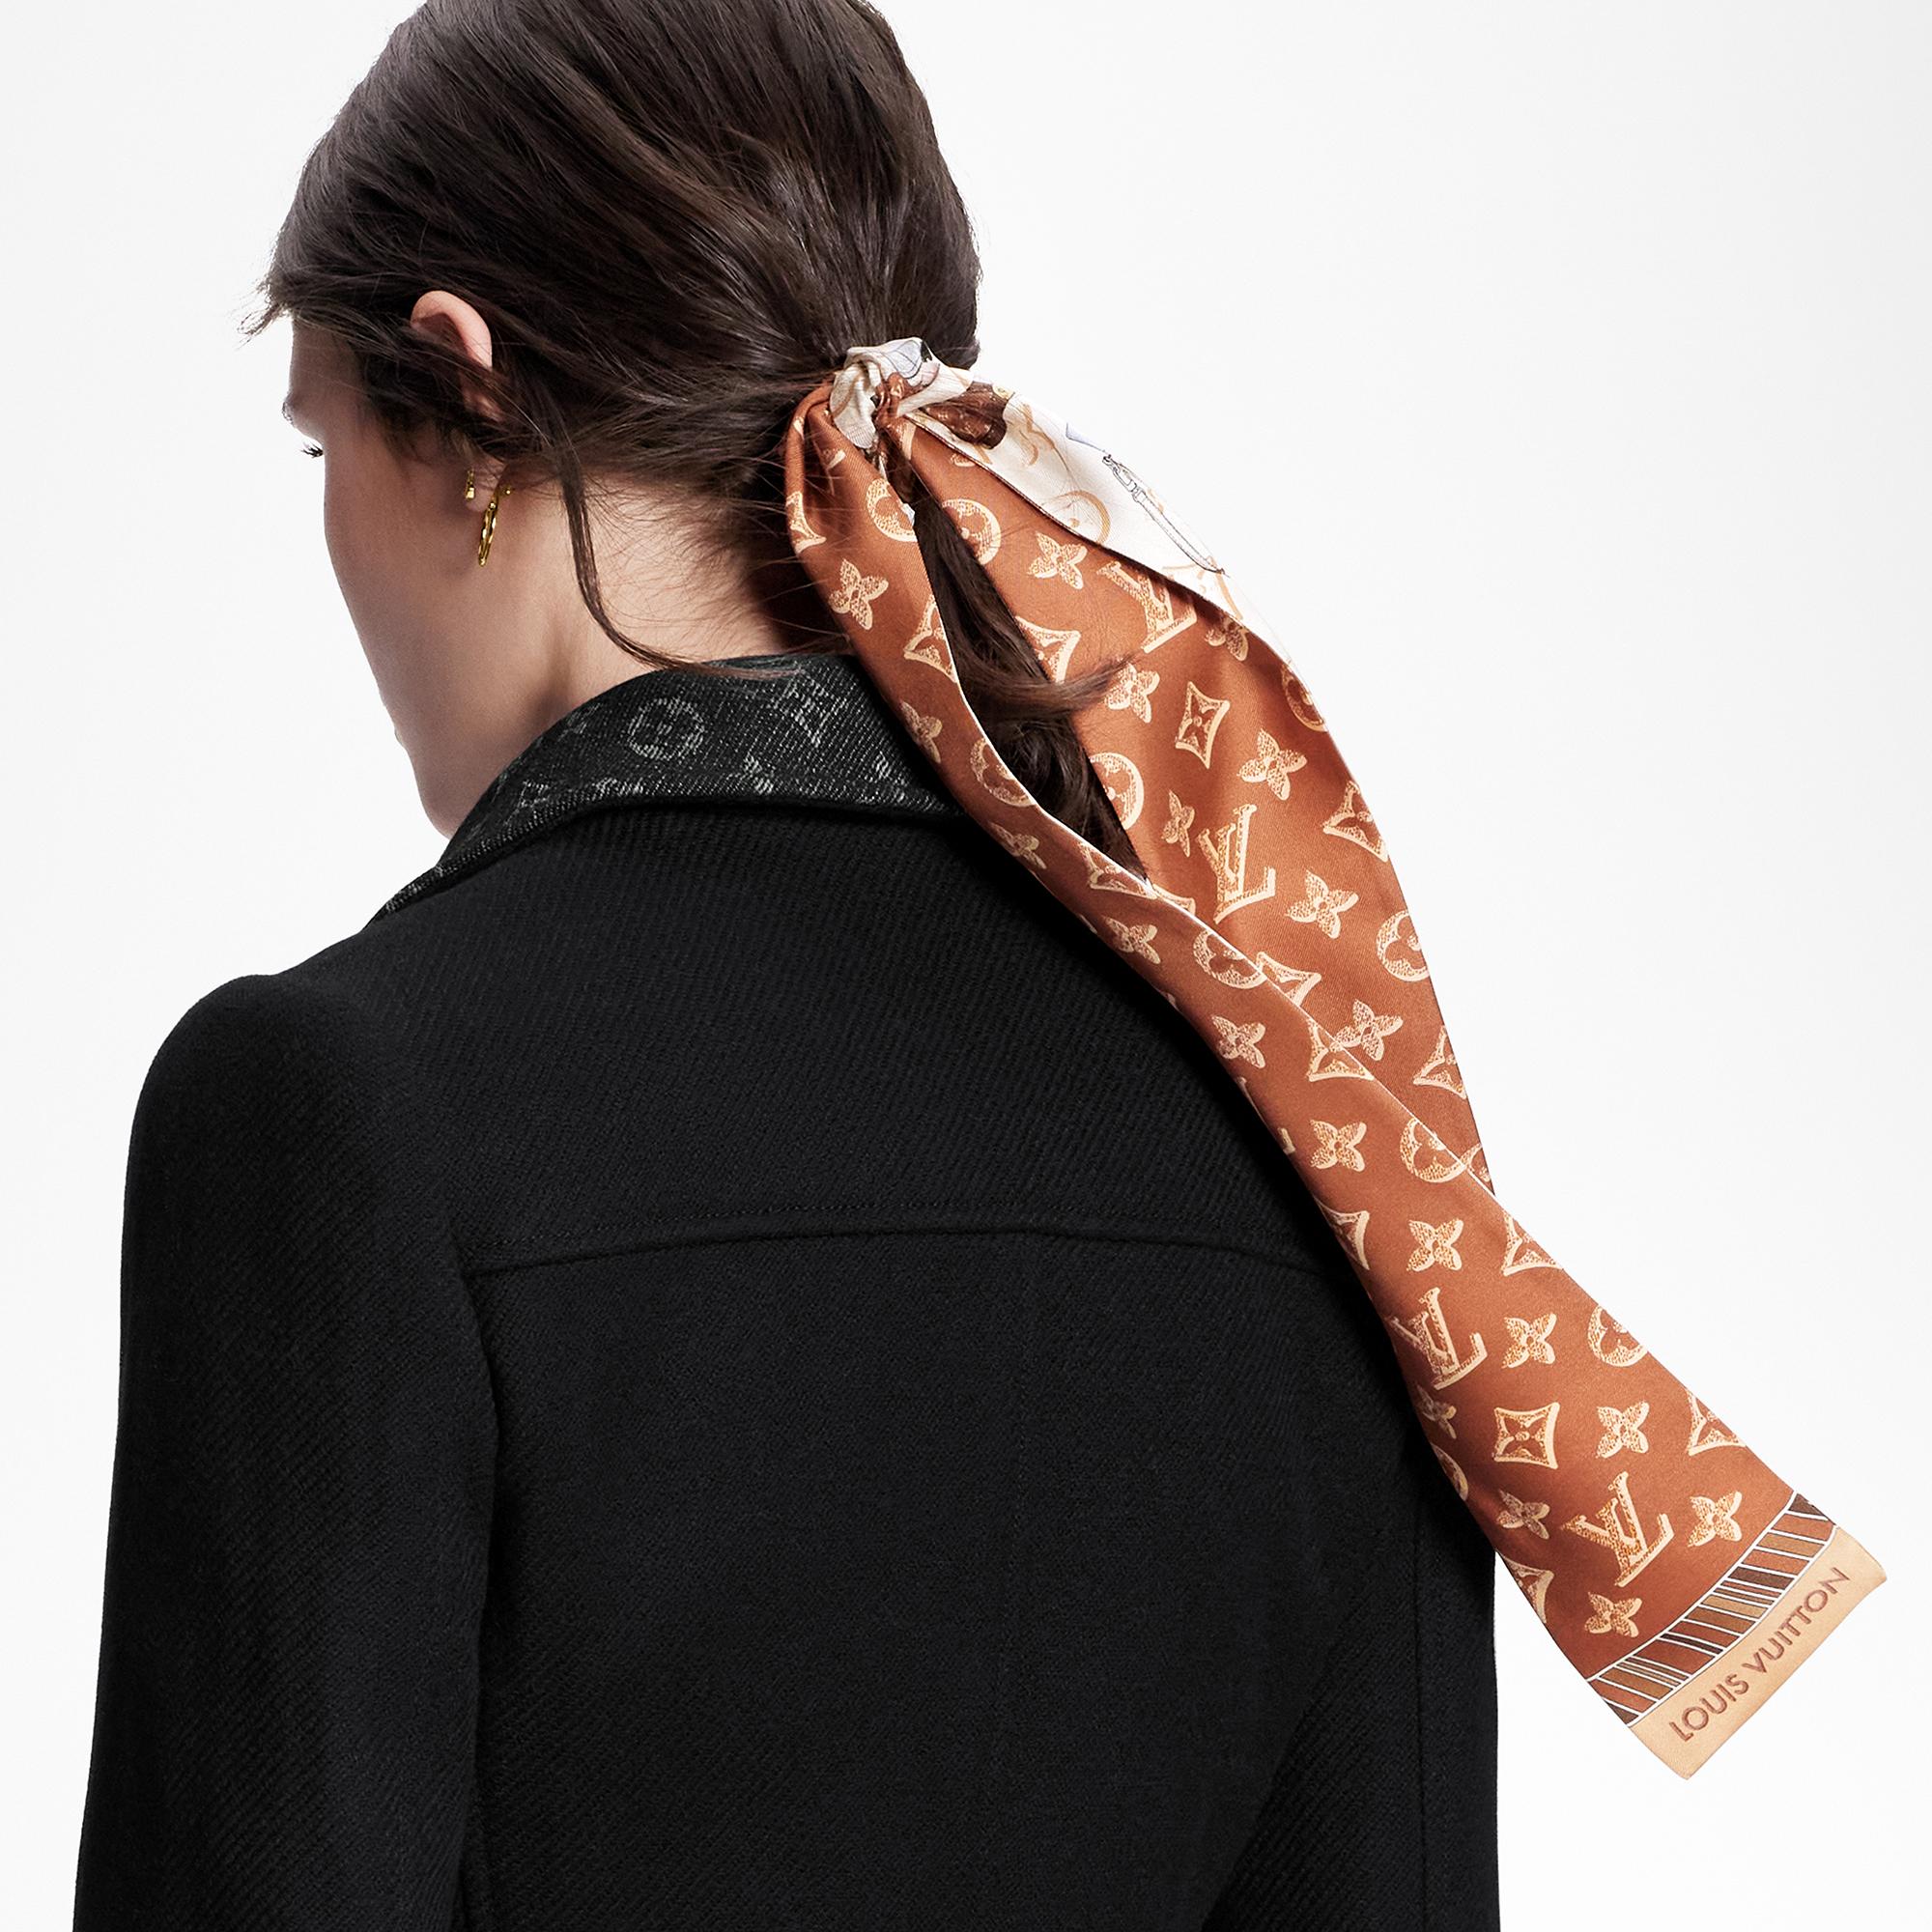 Louis Vuitton tied up in knots over keffiyeh-like scarf – www